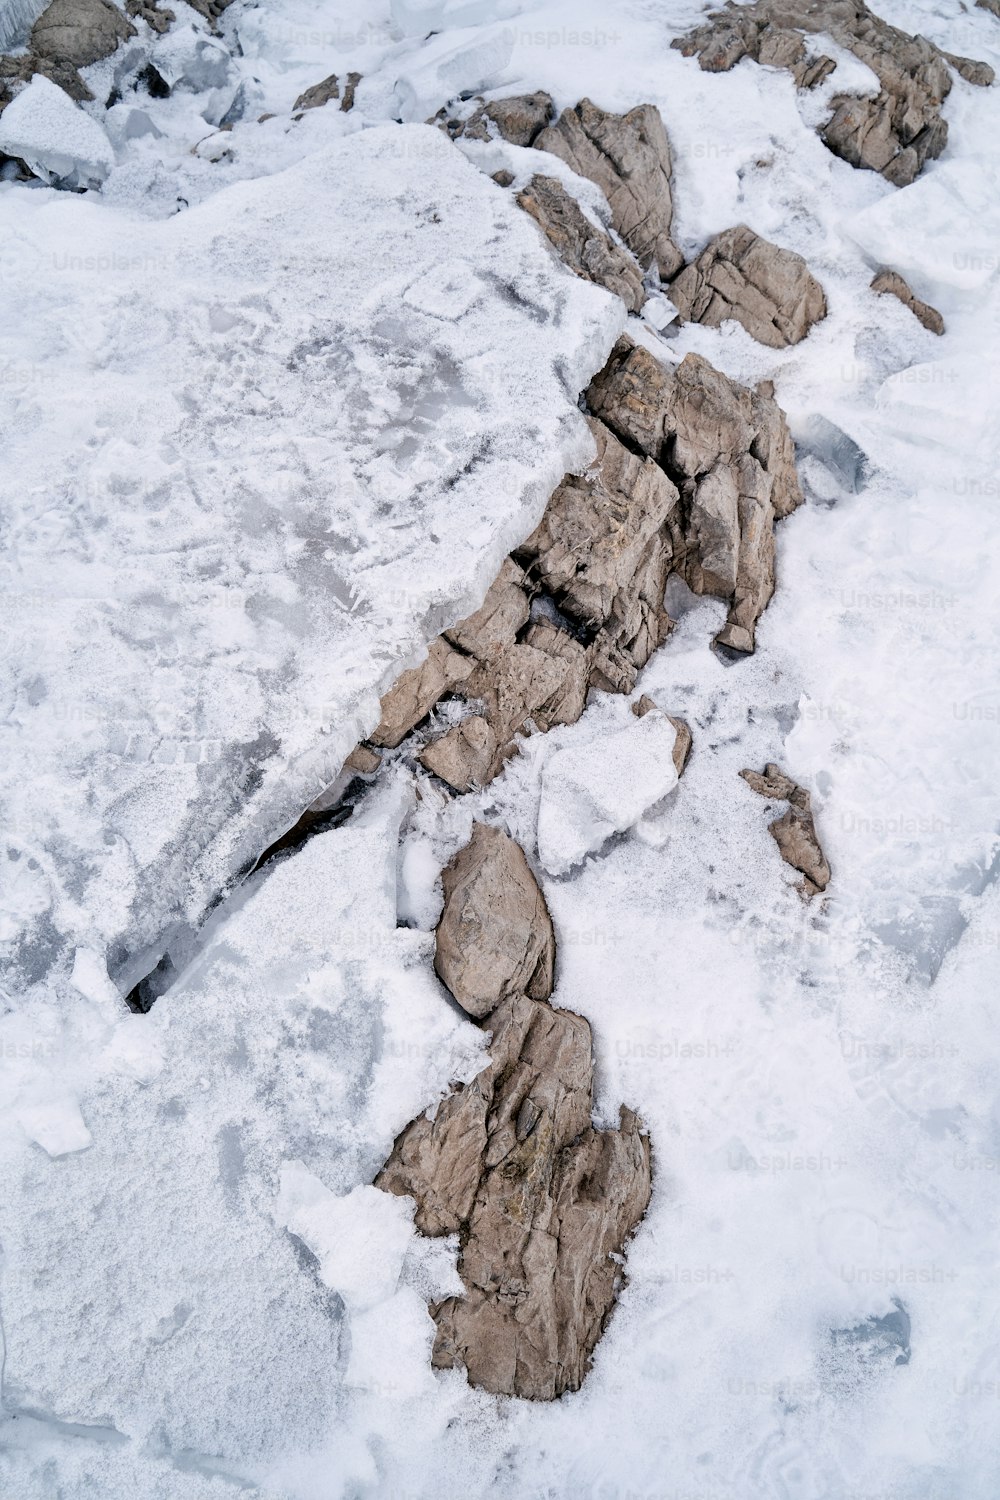 une zone enneigée avec des roches et de la neige